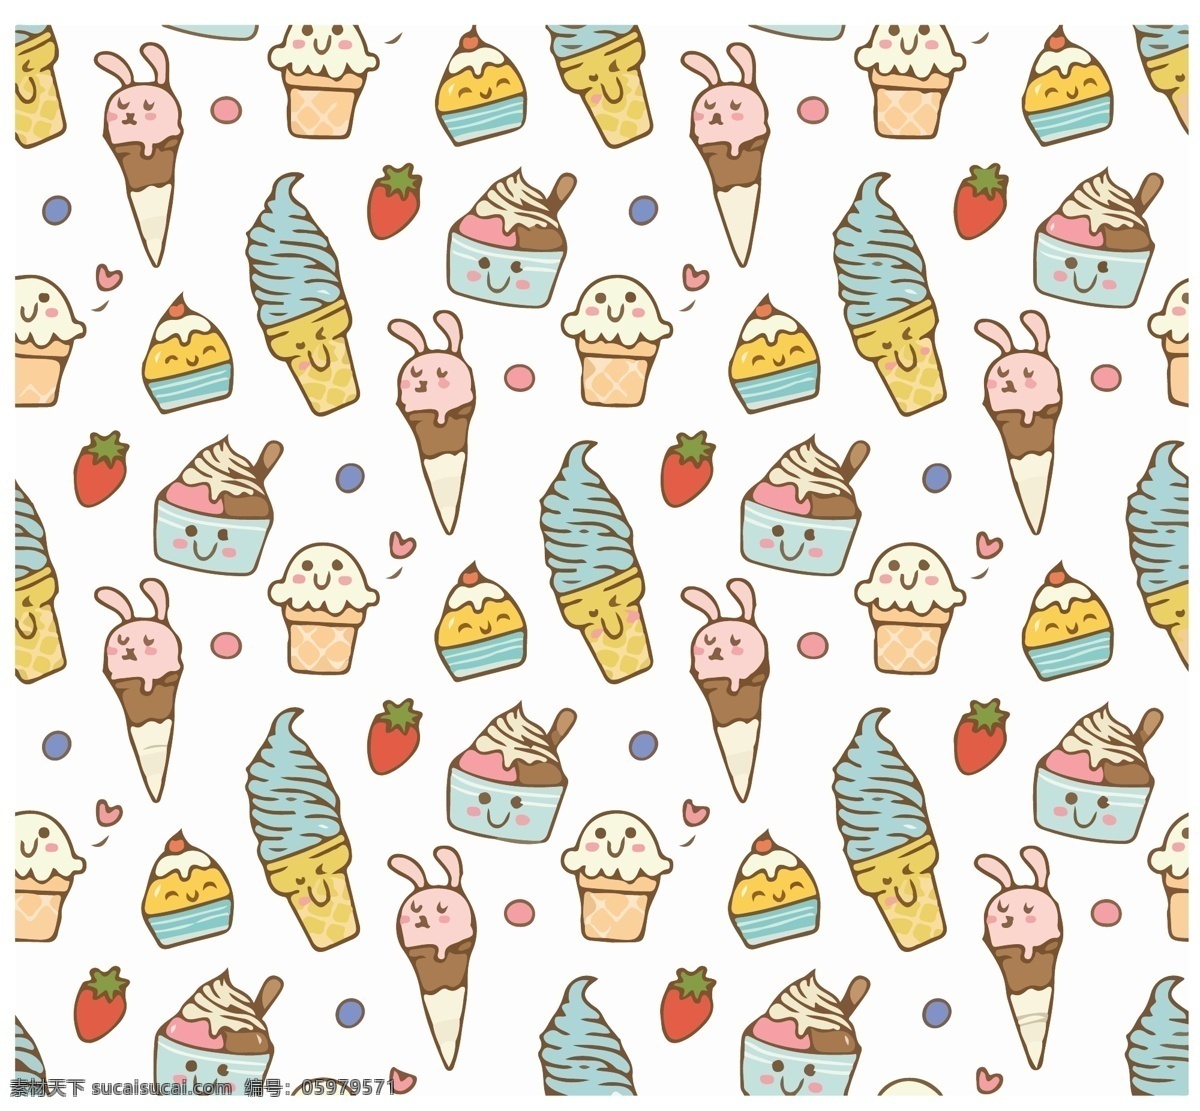 冰淇淋 圈圈 碎花 卡通冰淇淋 可爱冰淇淋 巧克力冰淇淋 草莓冰淇淋 甜筒 巧克力甜筒 草莓甜筒 冰淇淋壁纸 冰淇淋墙纸 冰淇淋背景 时尚冰淇淋 流行冰淇淋 卡通 背景底纹素材 底纹边框 背景底纹